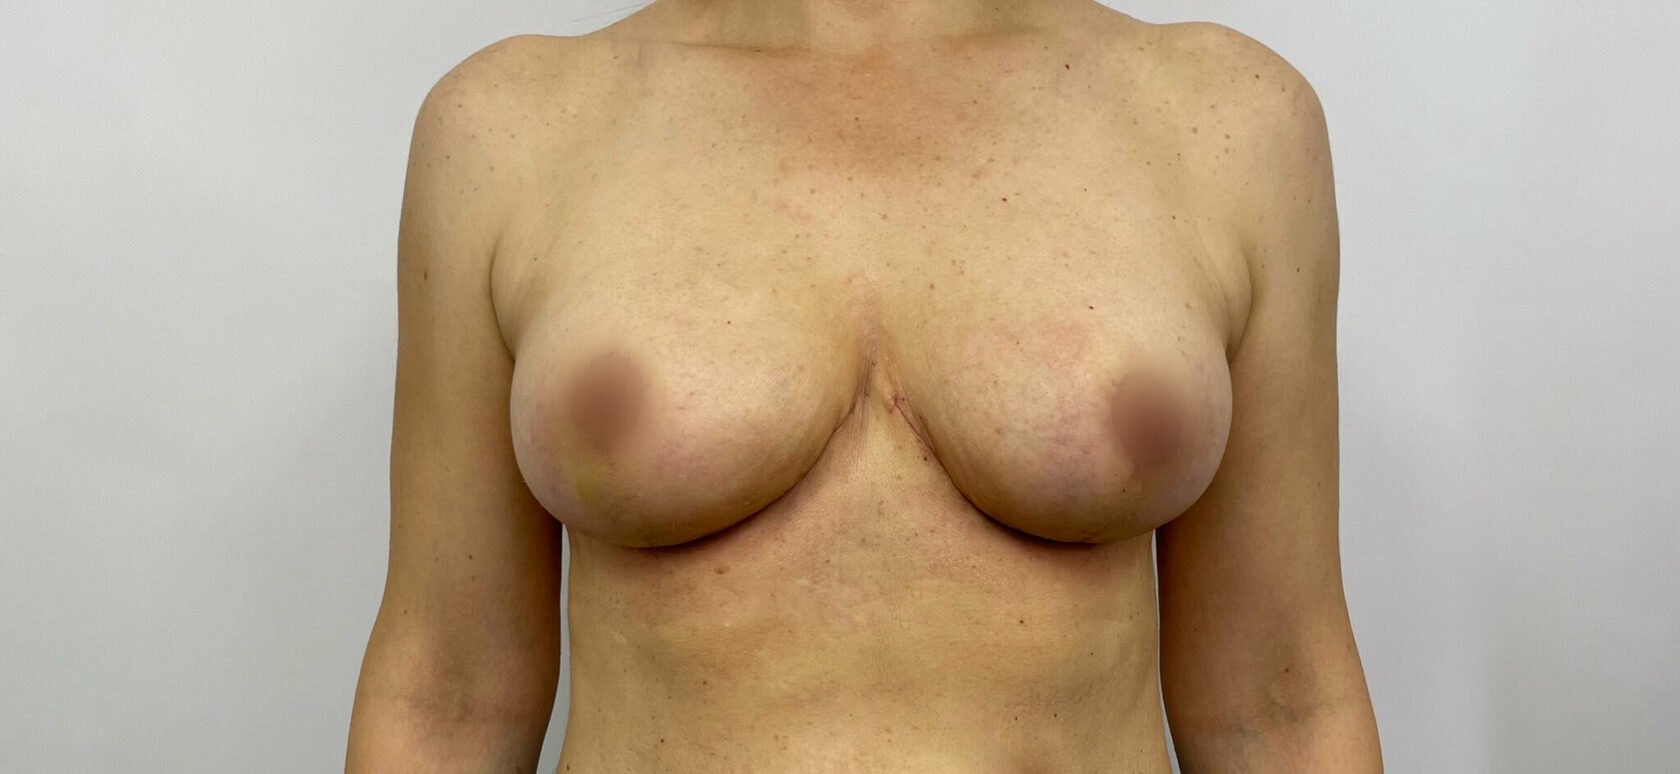 от гормонов увеличилась одна грудь фото 17